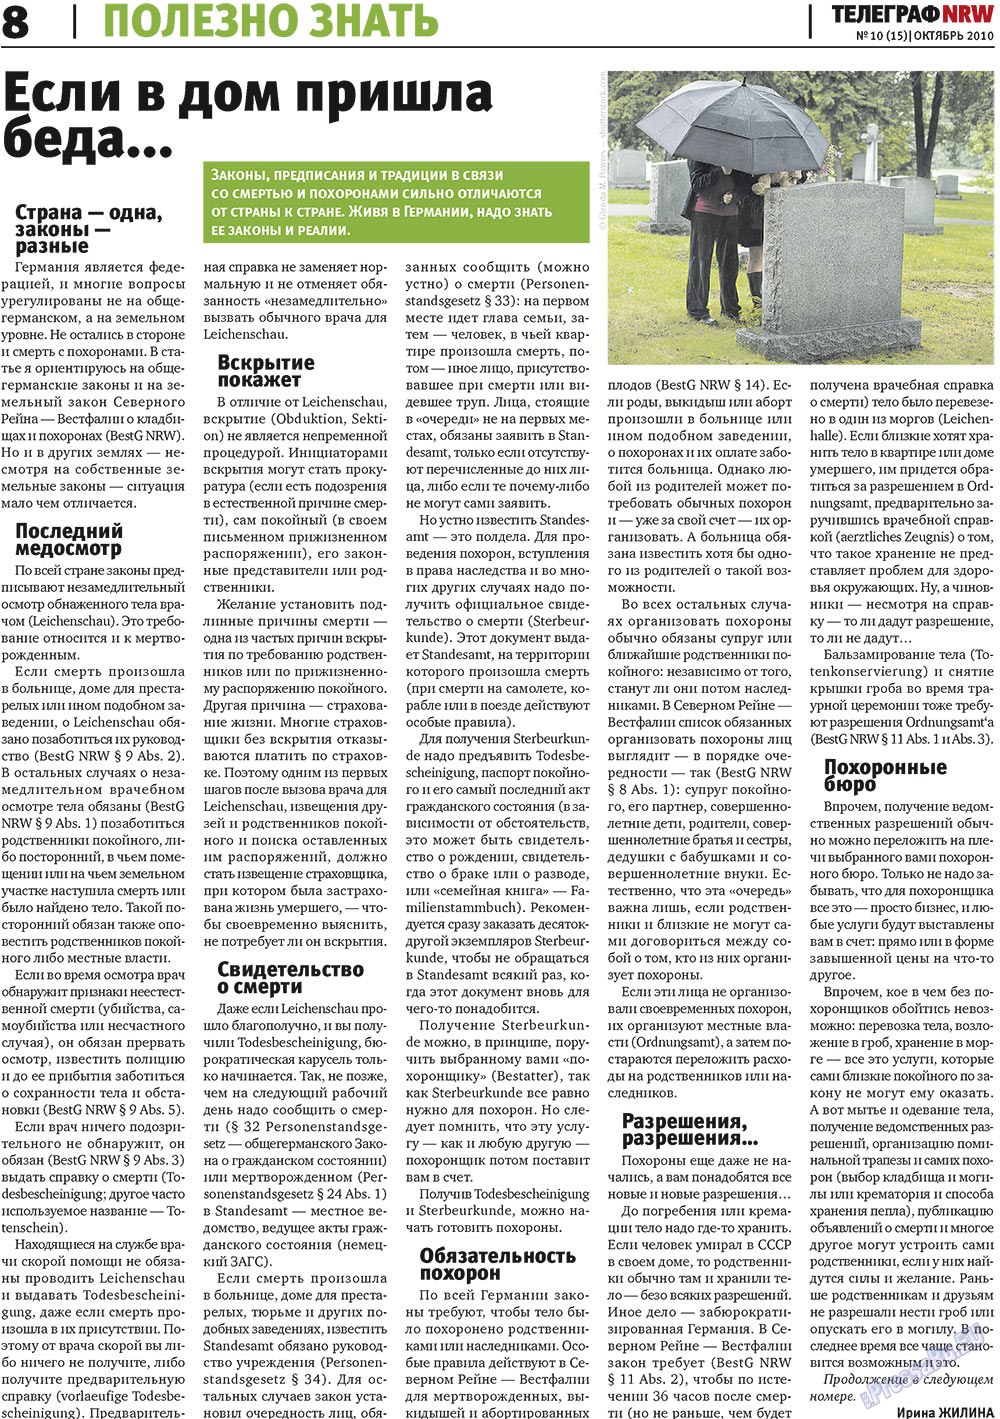 Телеграф NRW (газета). 2010 год, номер 10, стр. 8